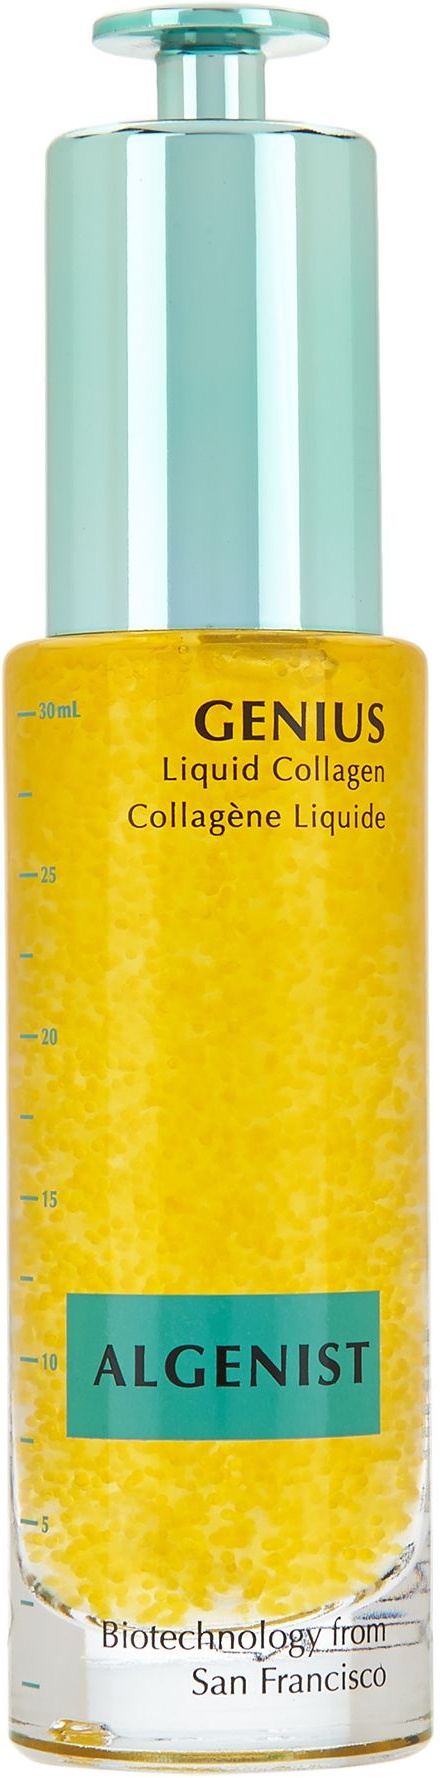 Algenist Genius Liquid Collagen